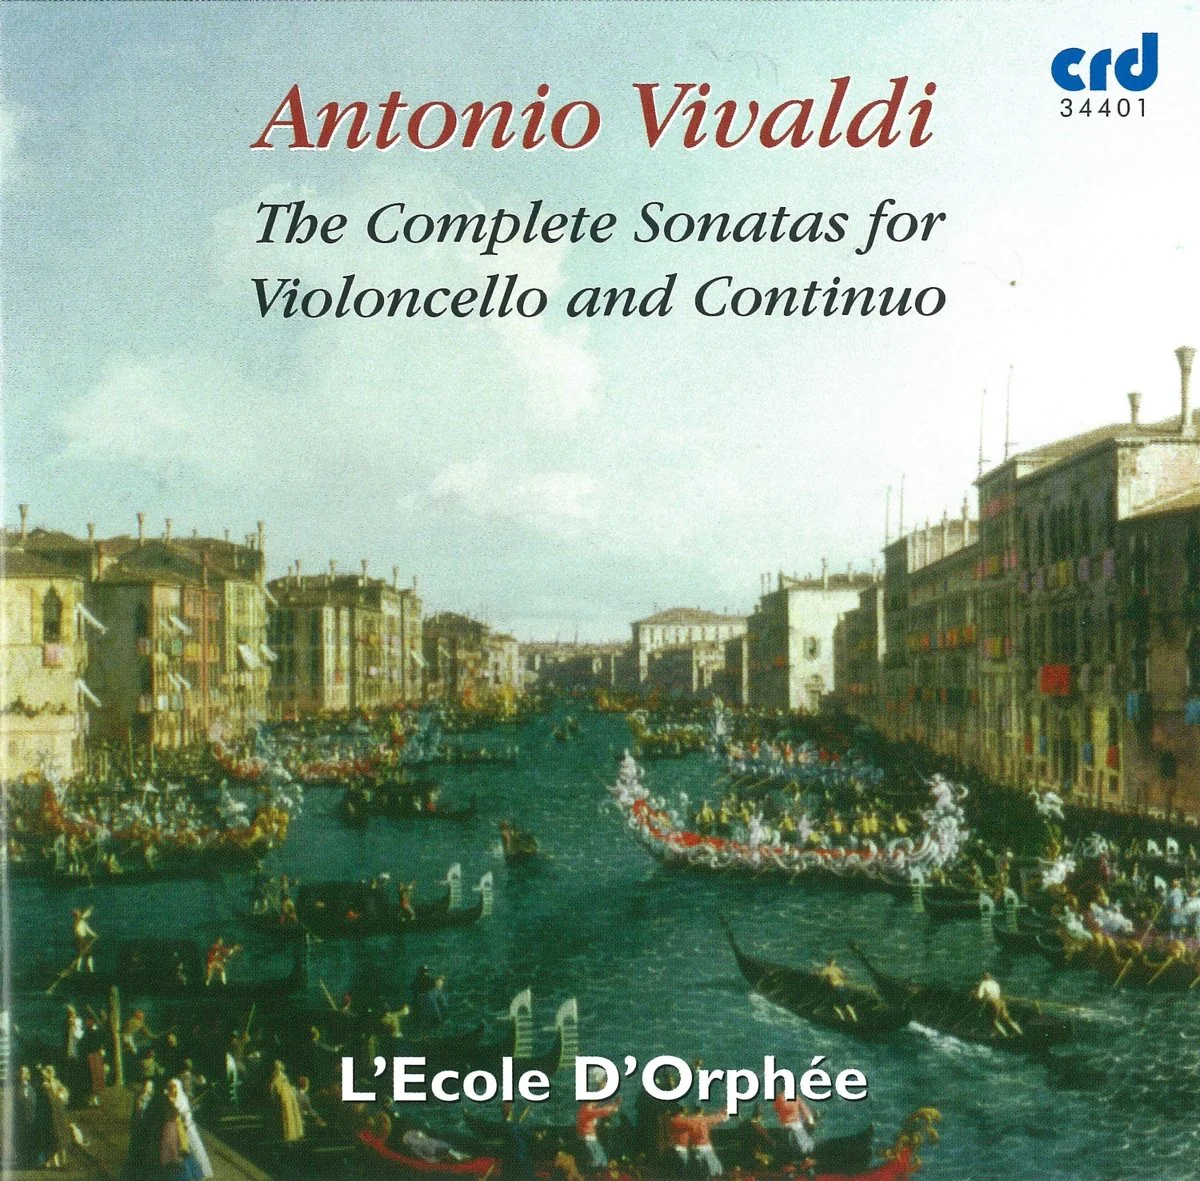 Antonio Vivaldi - The Complete Sonatas for Violoncello & Continuo (2 CD)